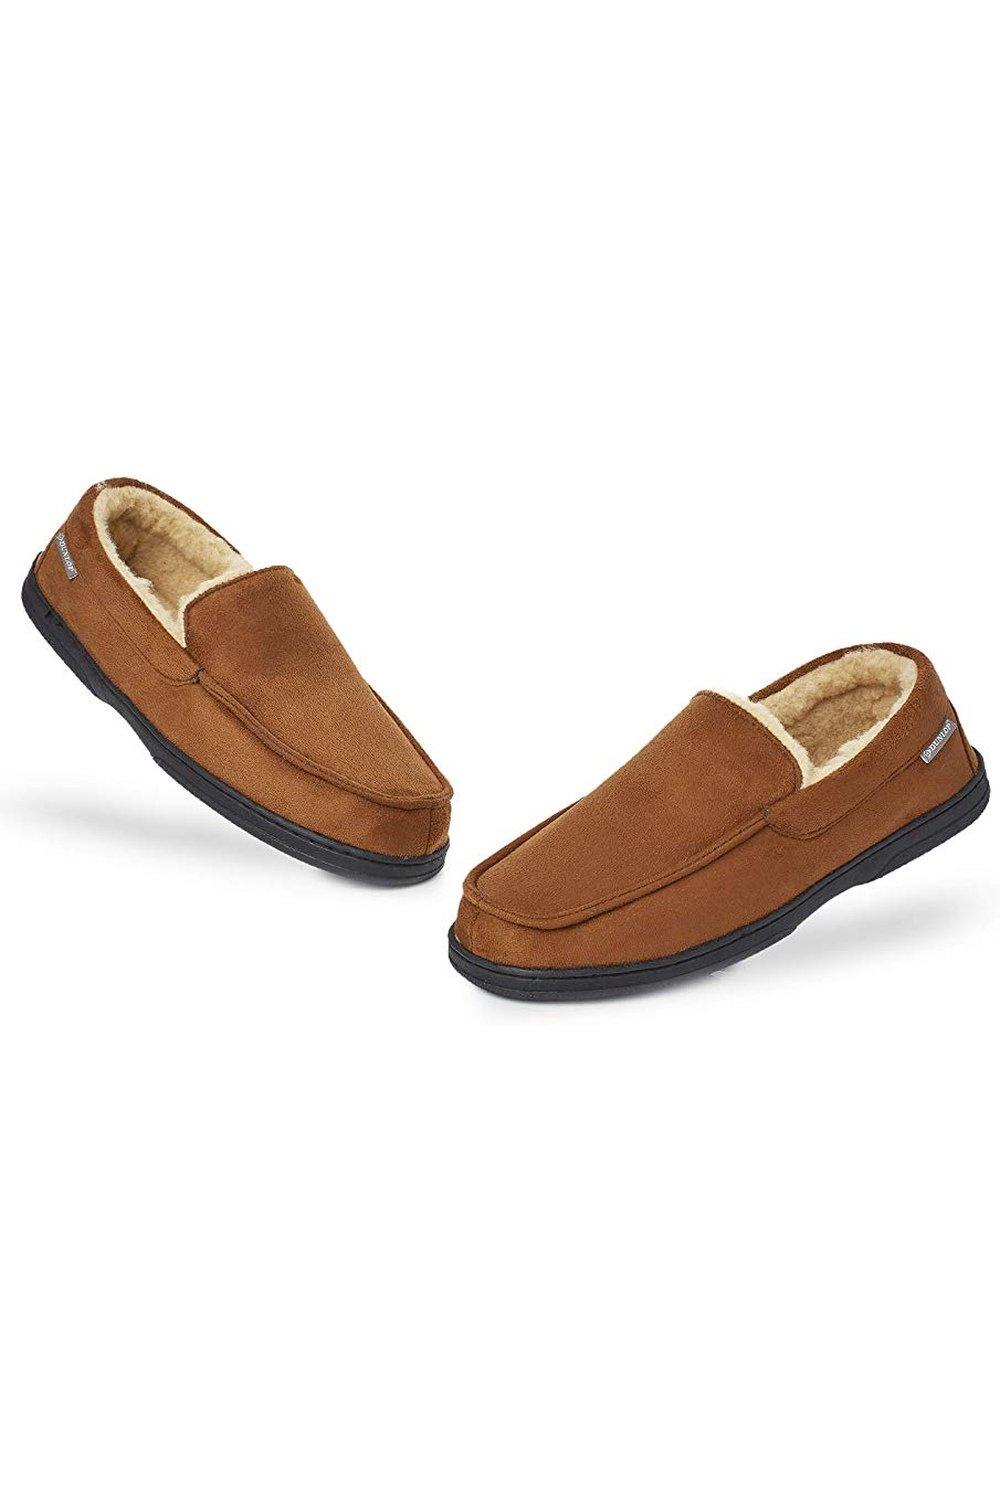 Мокасины-тапочки Dunlop, коричневый